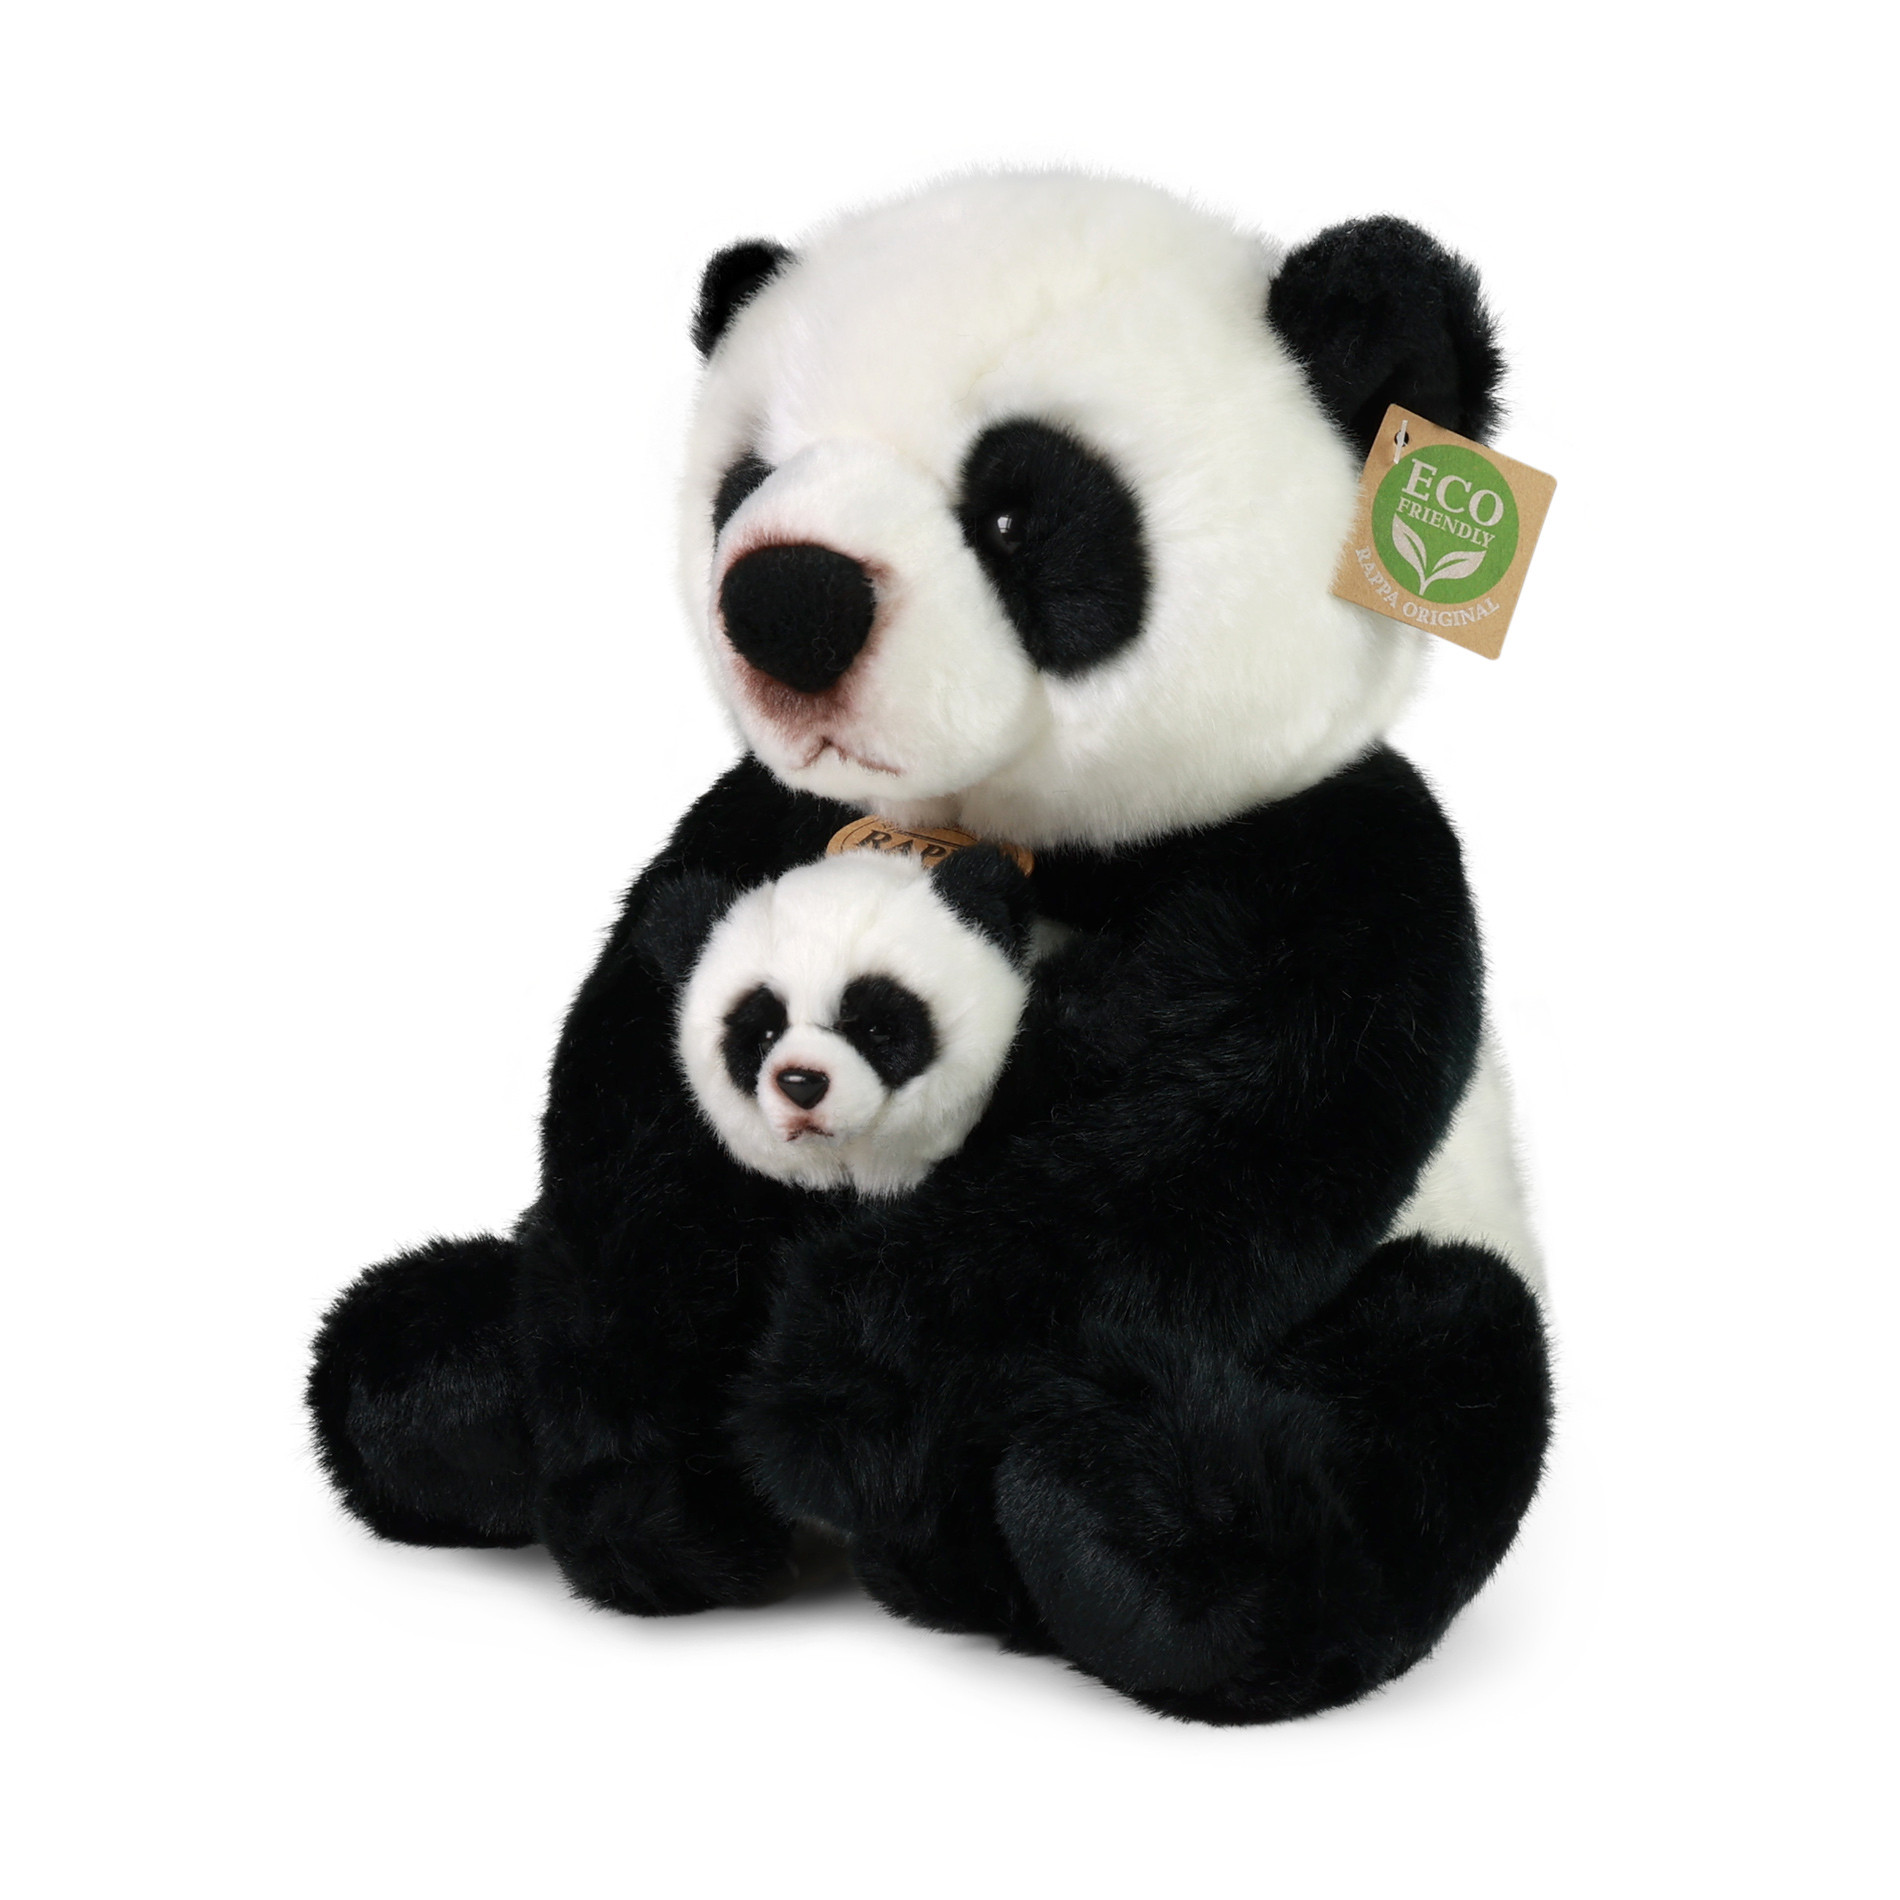 Plush panda w/cub 27 cm ECO-FRIENDLY